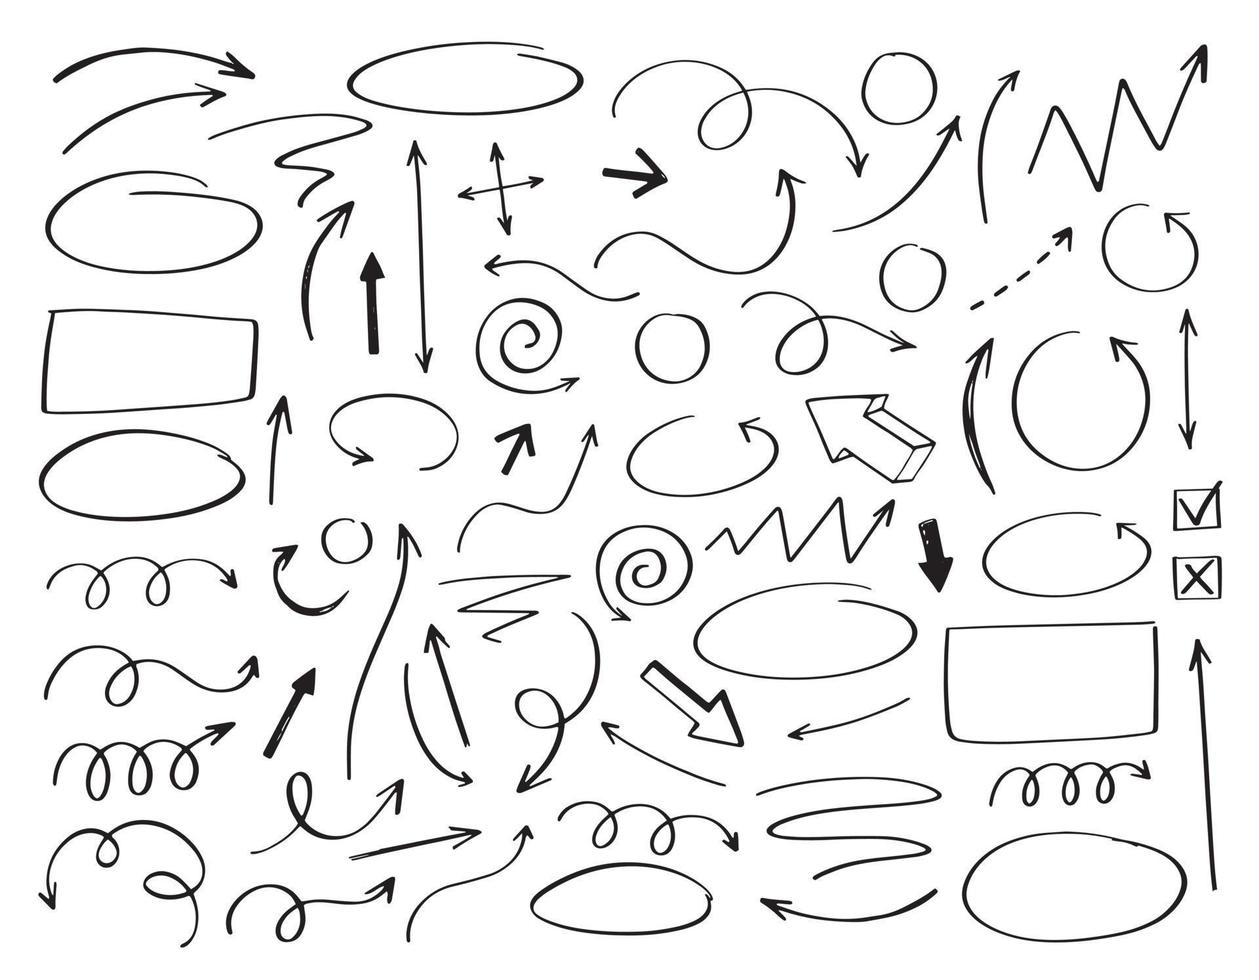 doodle frecce vettoriali ed elementi di design. insieme disegnato a mano di icone, cornici, bordi, frecce in stile cartone animato. elementi per infografica.